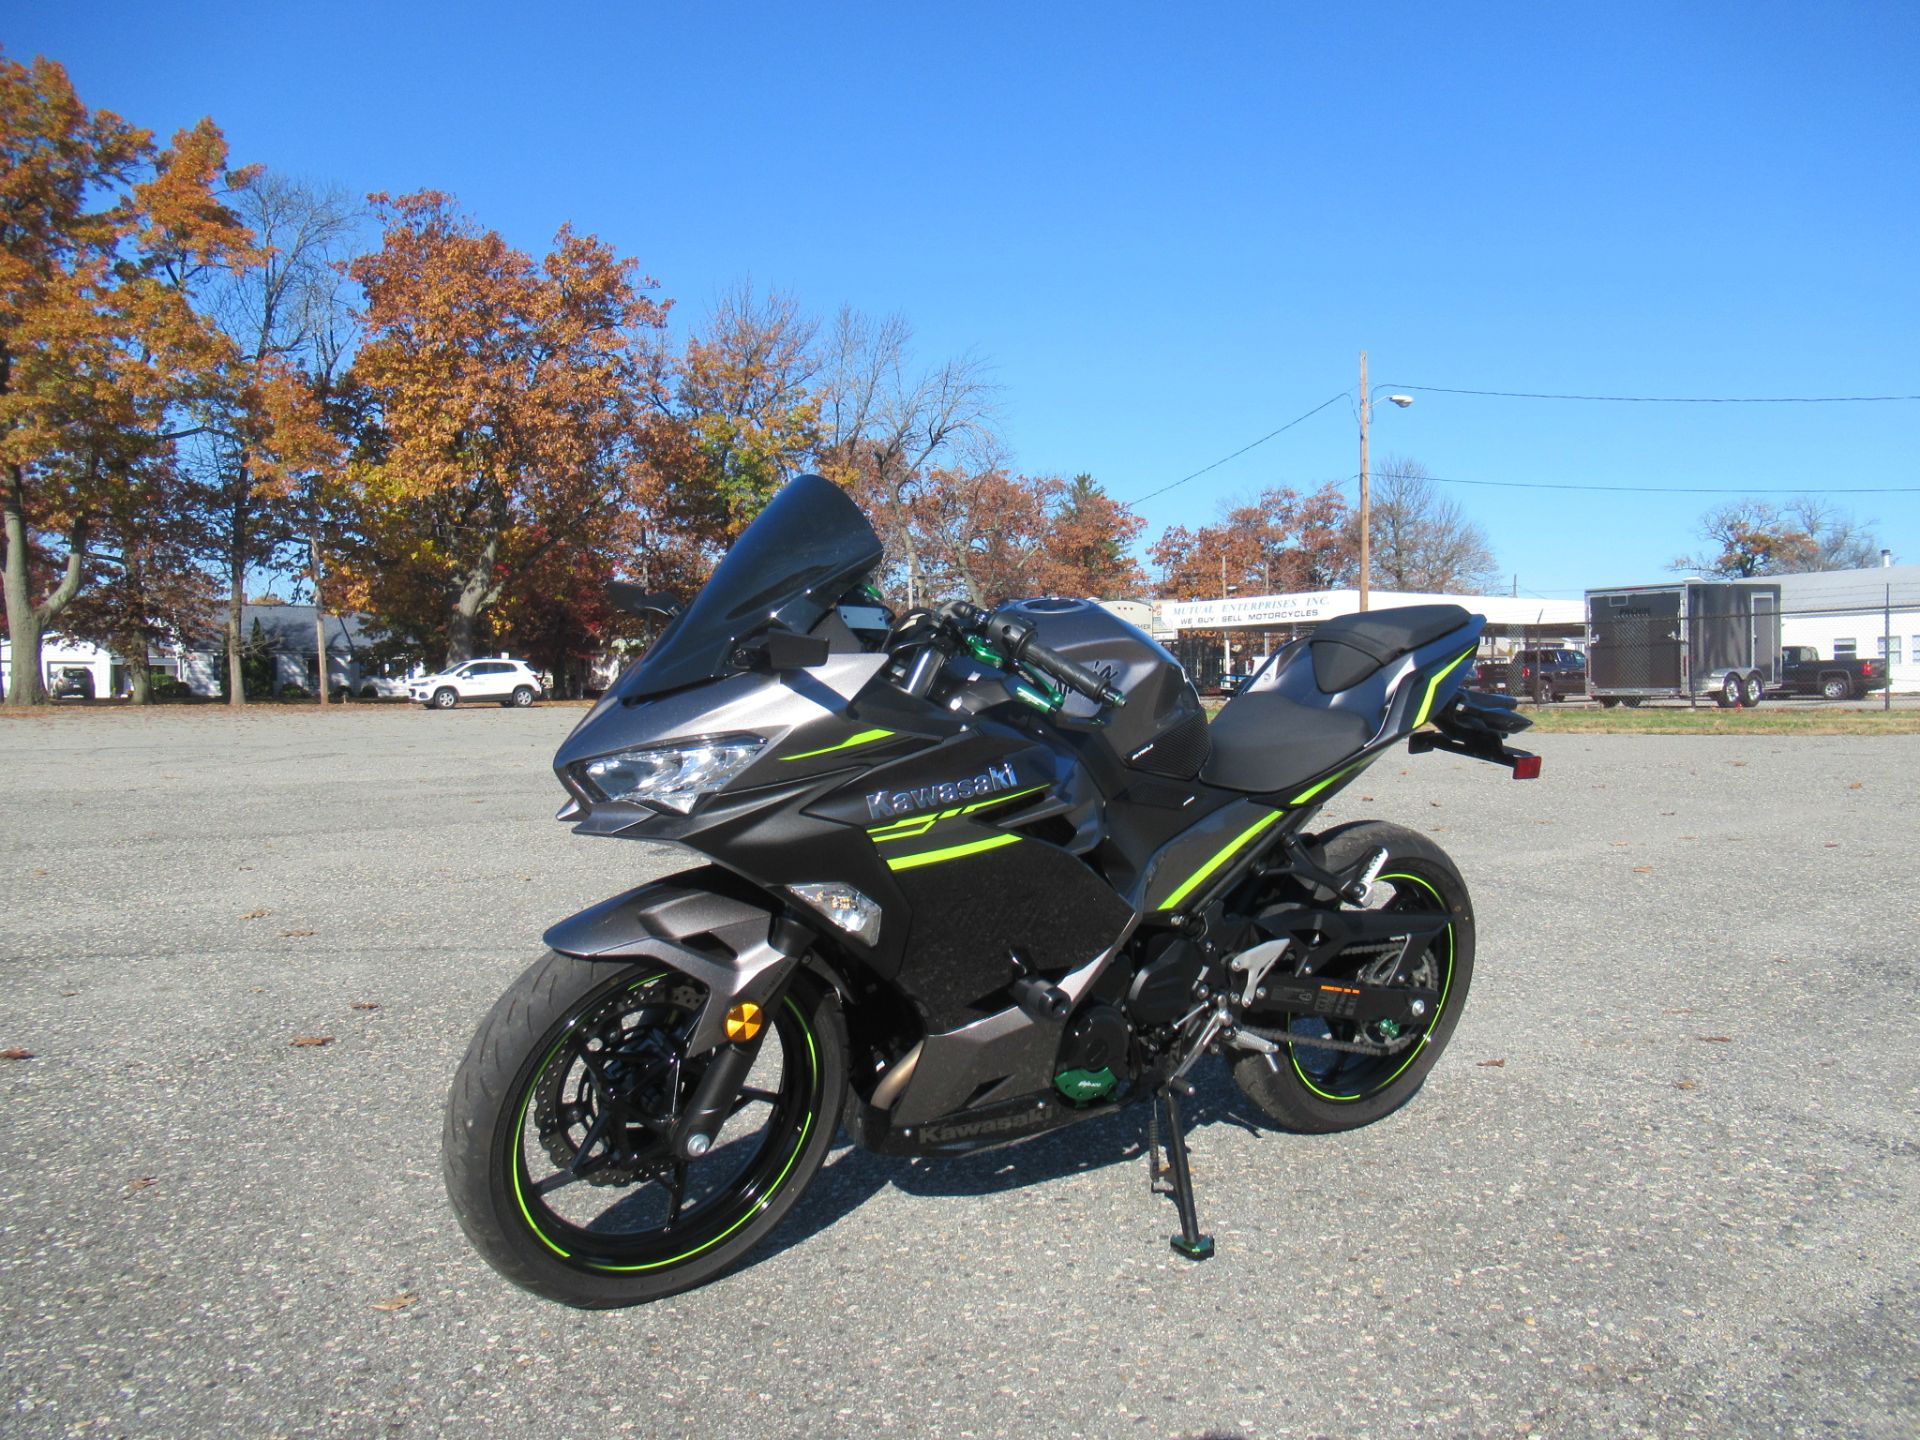 2021 Kawasaki Ninja 400 ABS in Springfield, Massachusetts - Photo 6